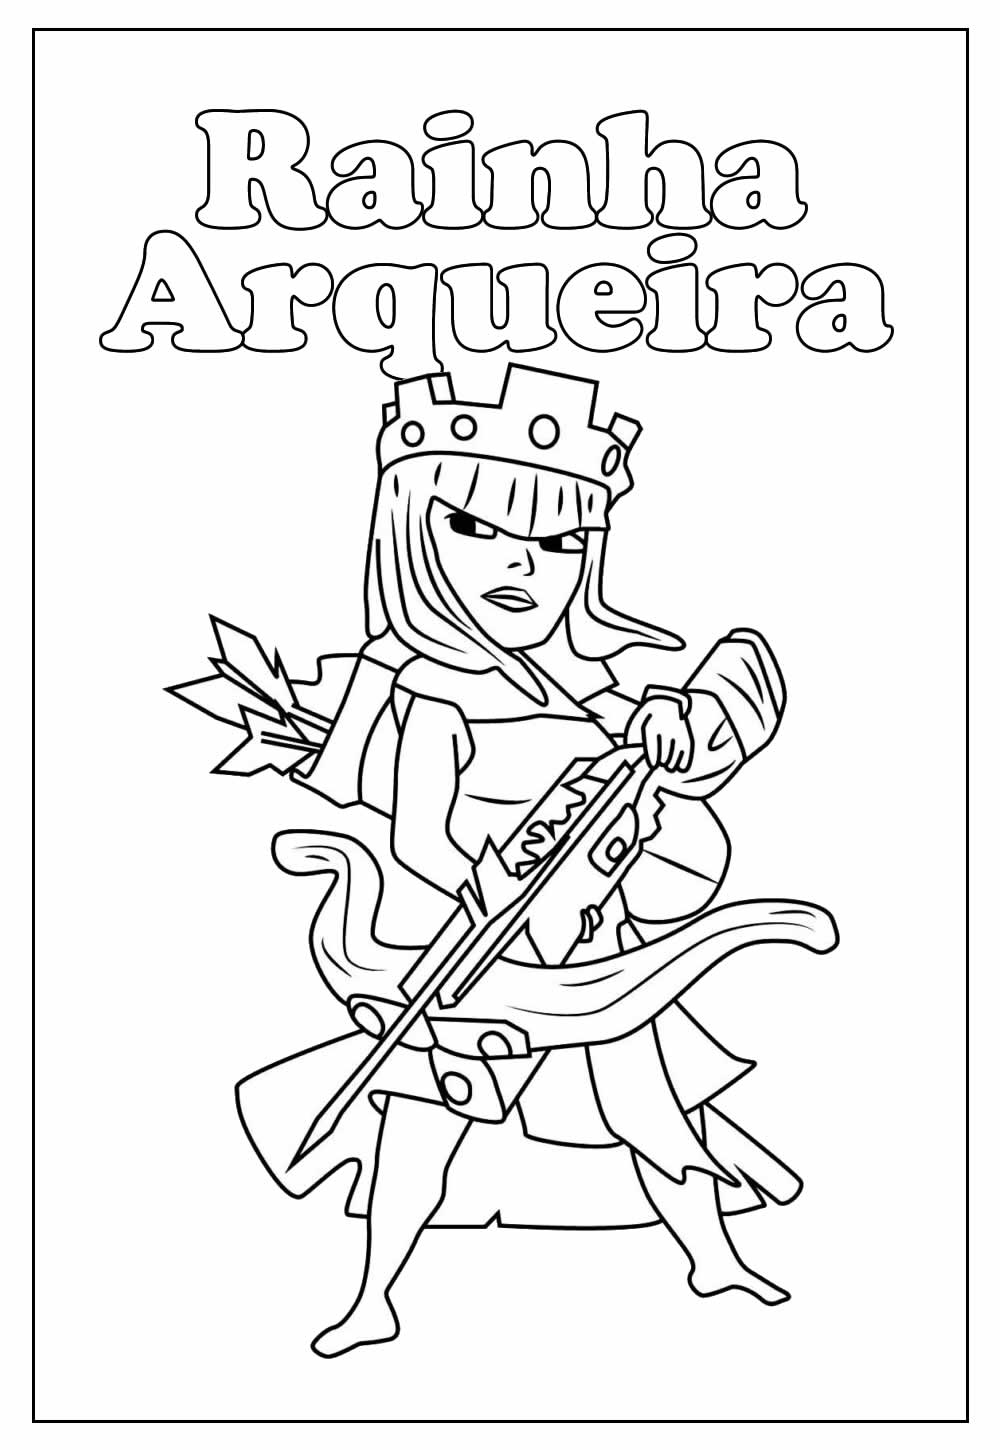 Desenho da Rainha Arqueira para colorir